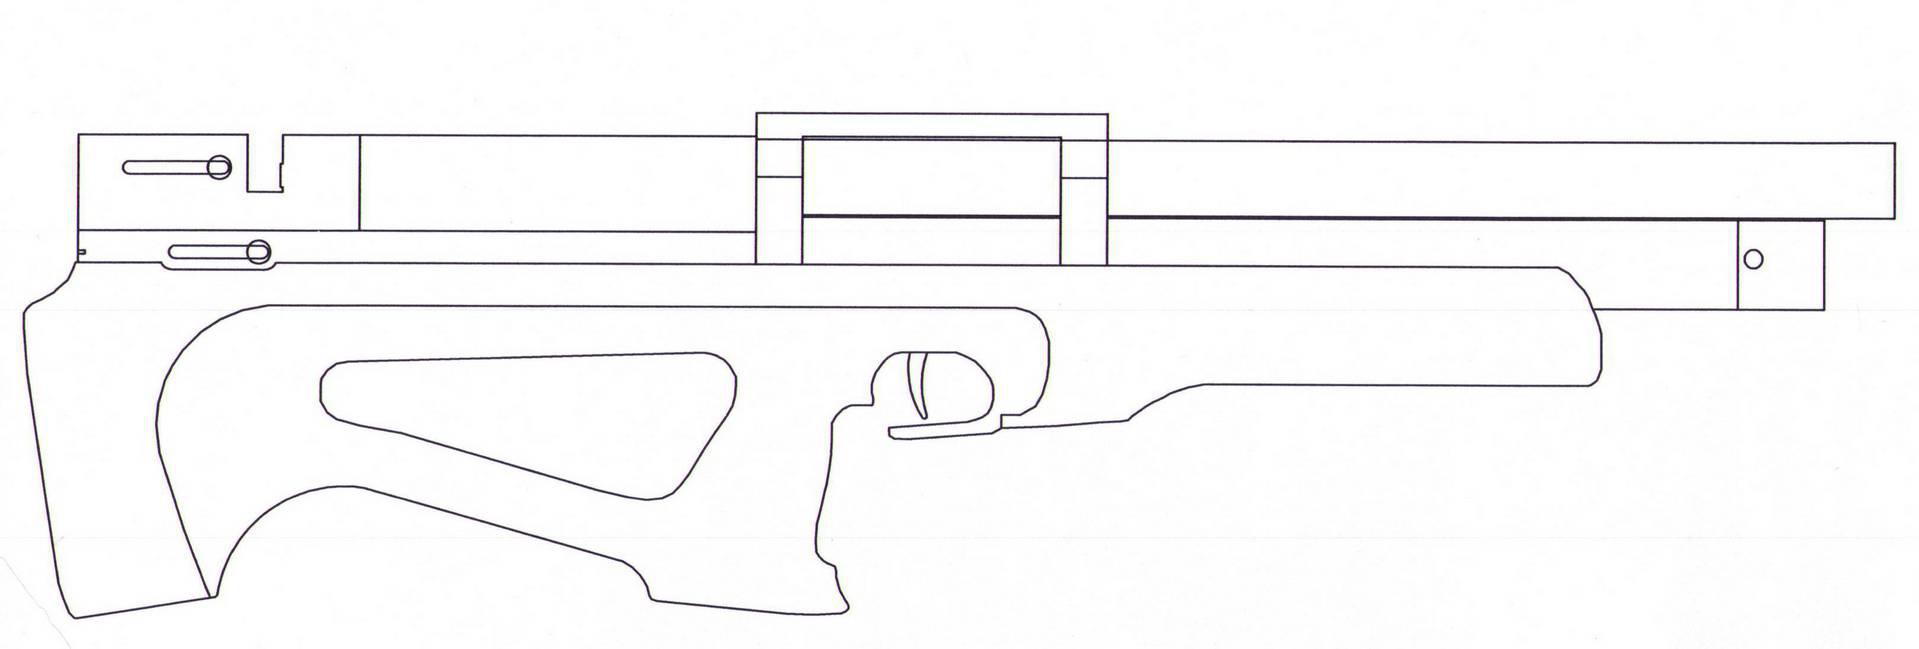 чертеж awp снайперской винтовки для дерева фото 47